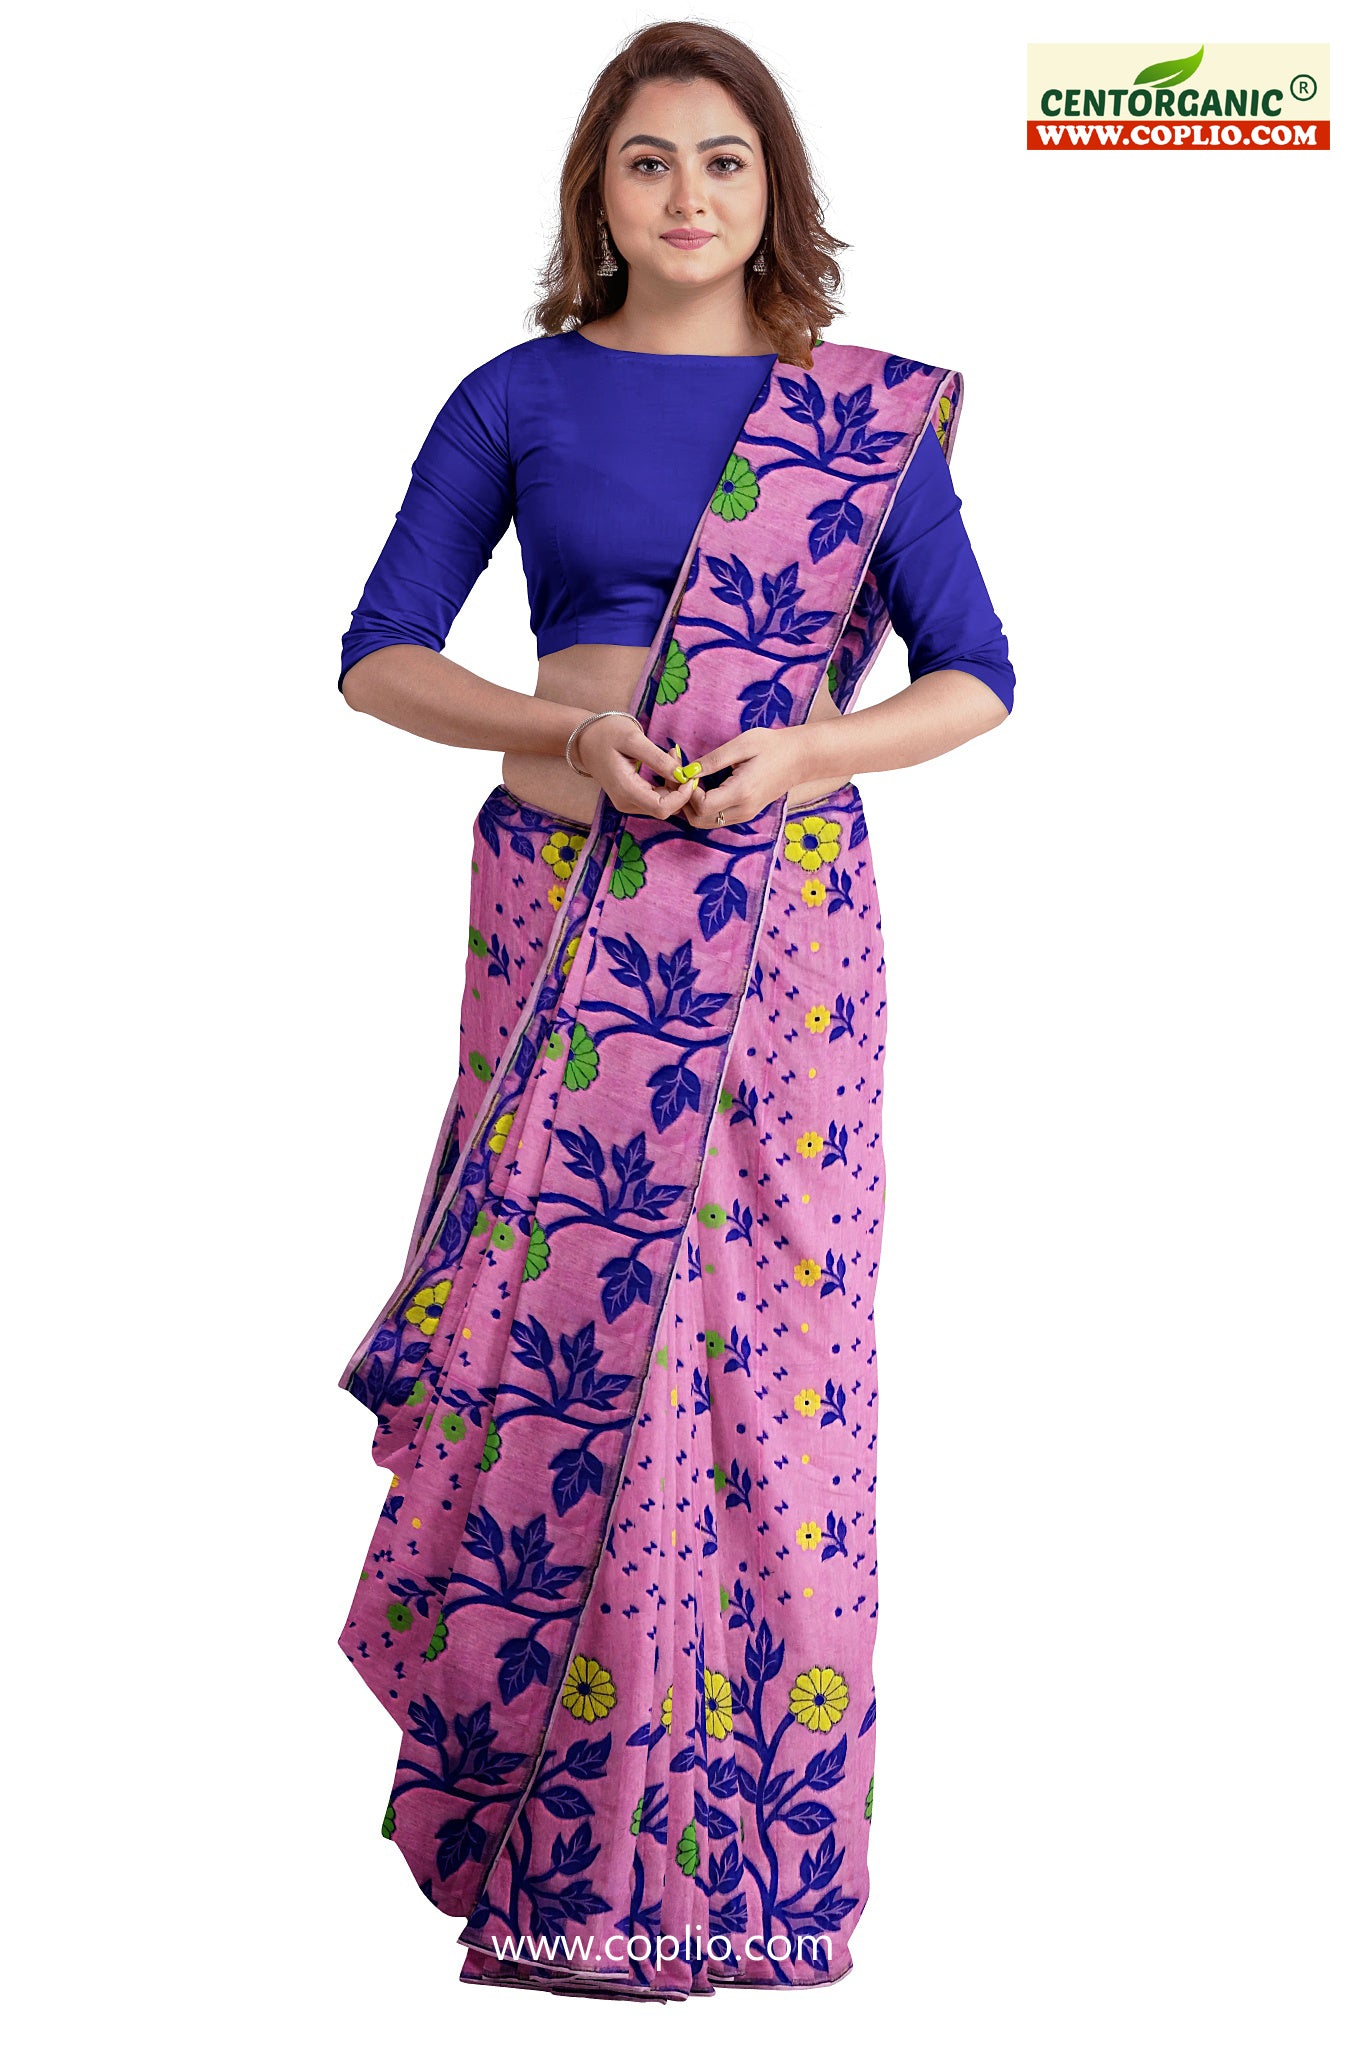 Centorganic Dhakai Soft Jamdani Bengal saree for women, All Over Weaving Floral Design Jamdani, Without Blouse Piece